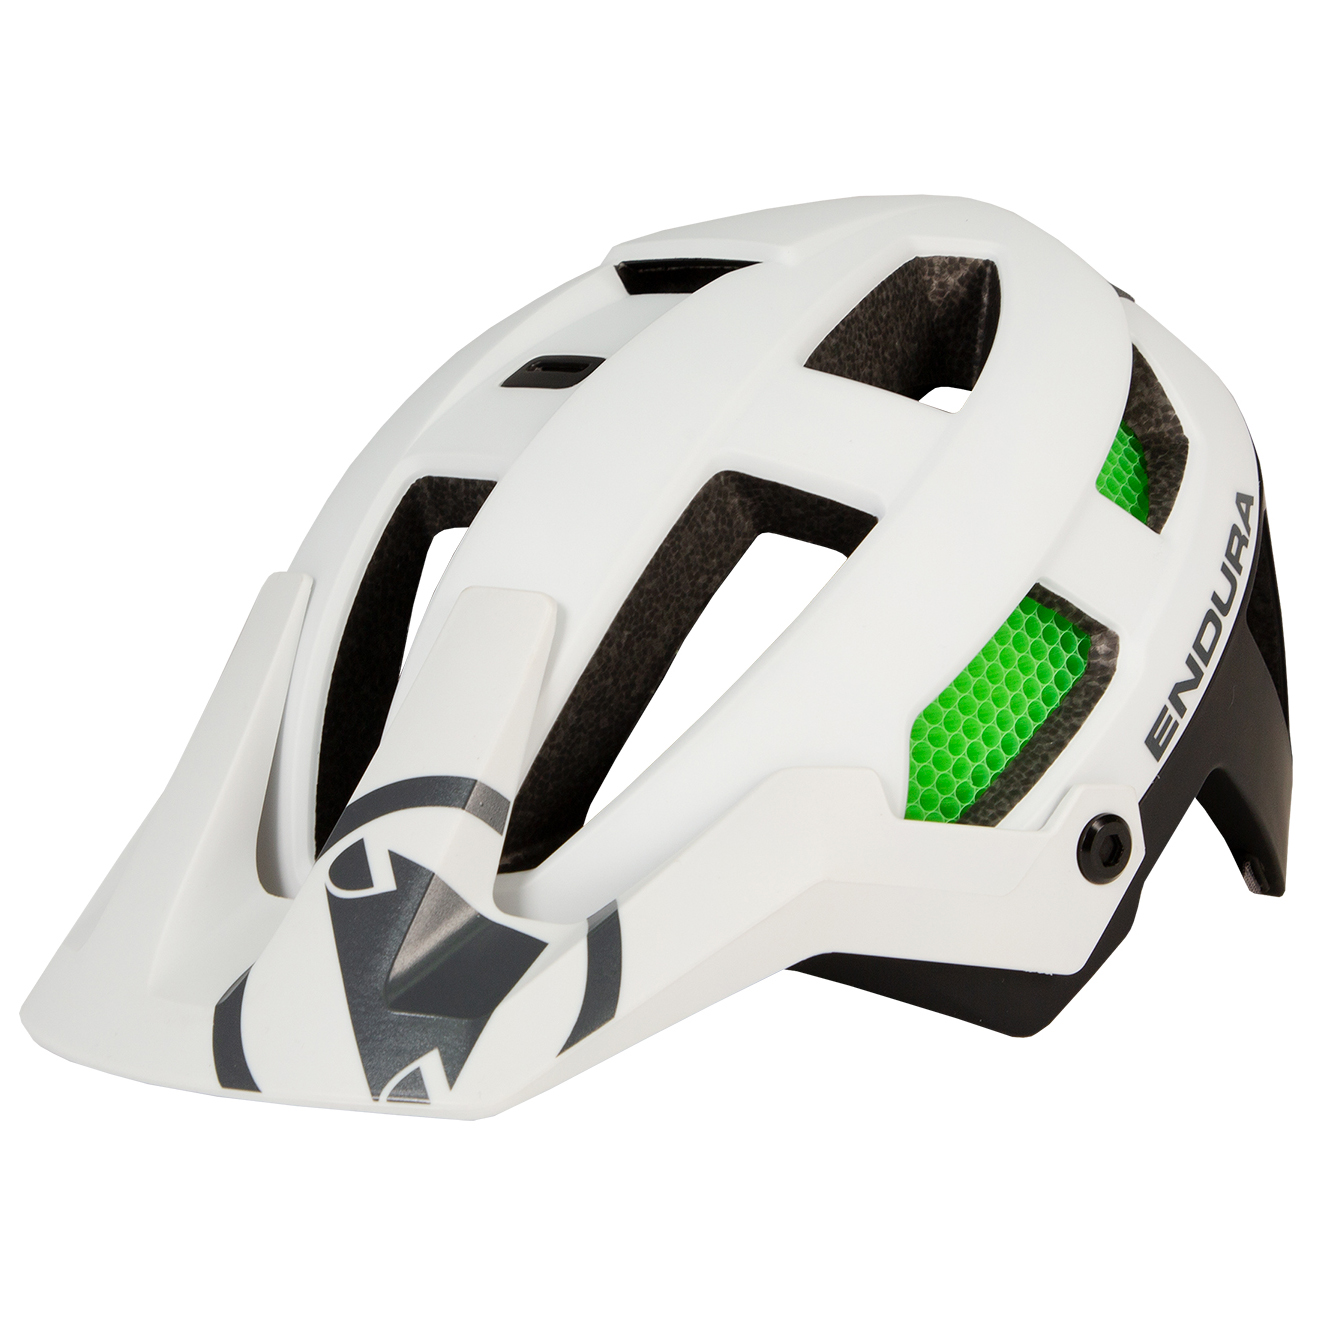 Велосипедный шлем Endura Singletrack Mips Helm, белый шлем велосипедный stern зеленый размер 52 56